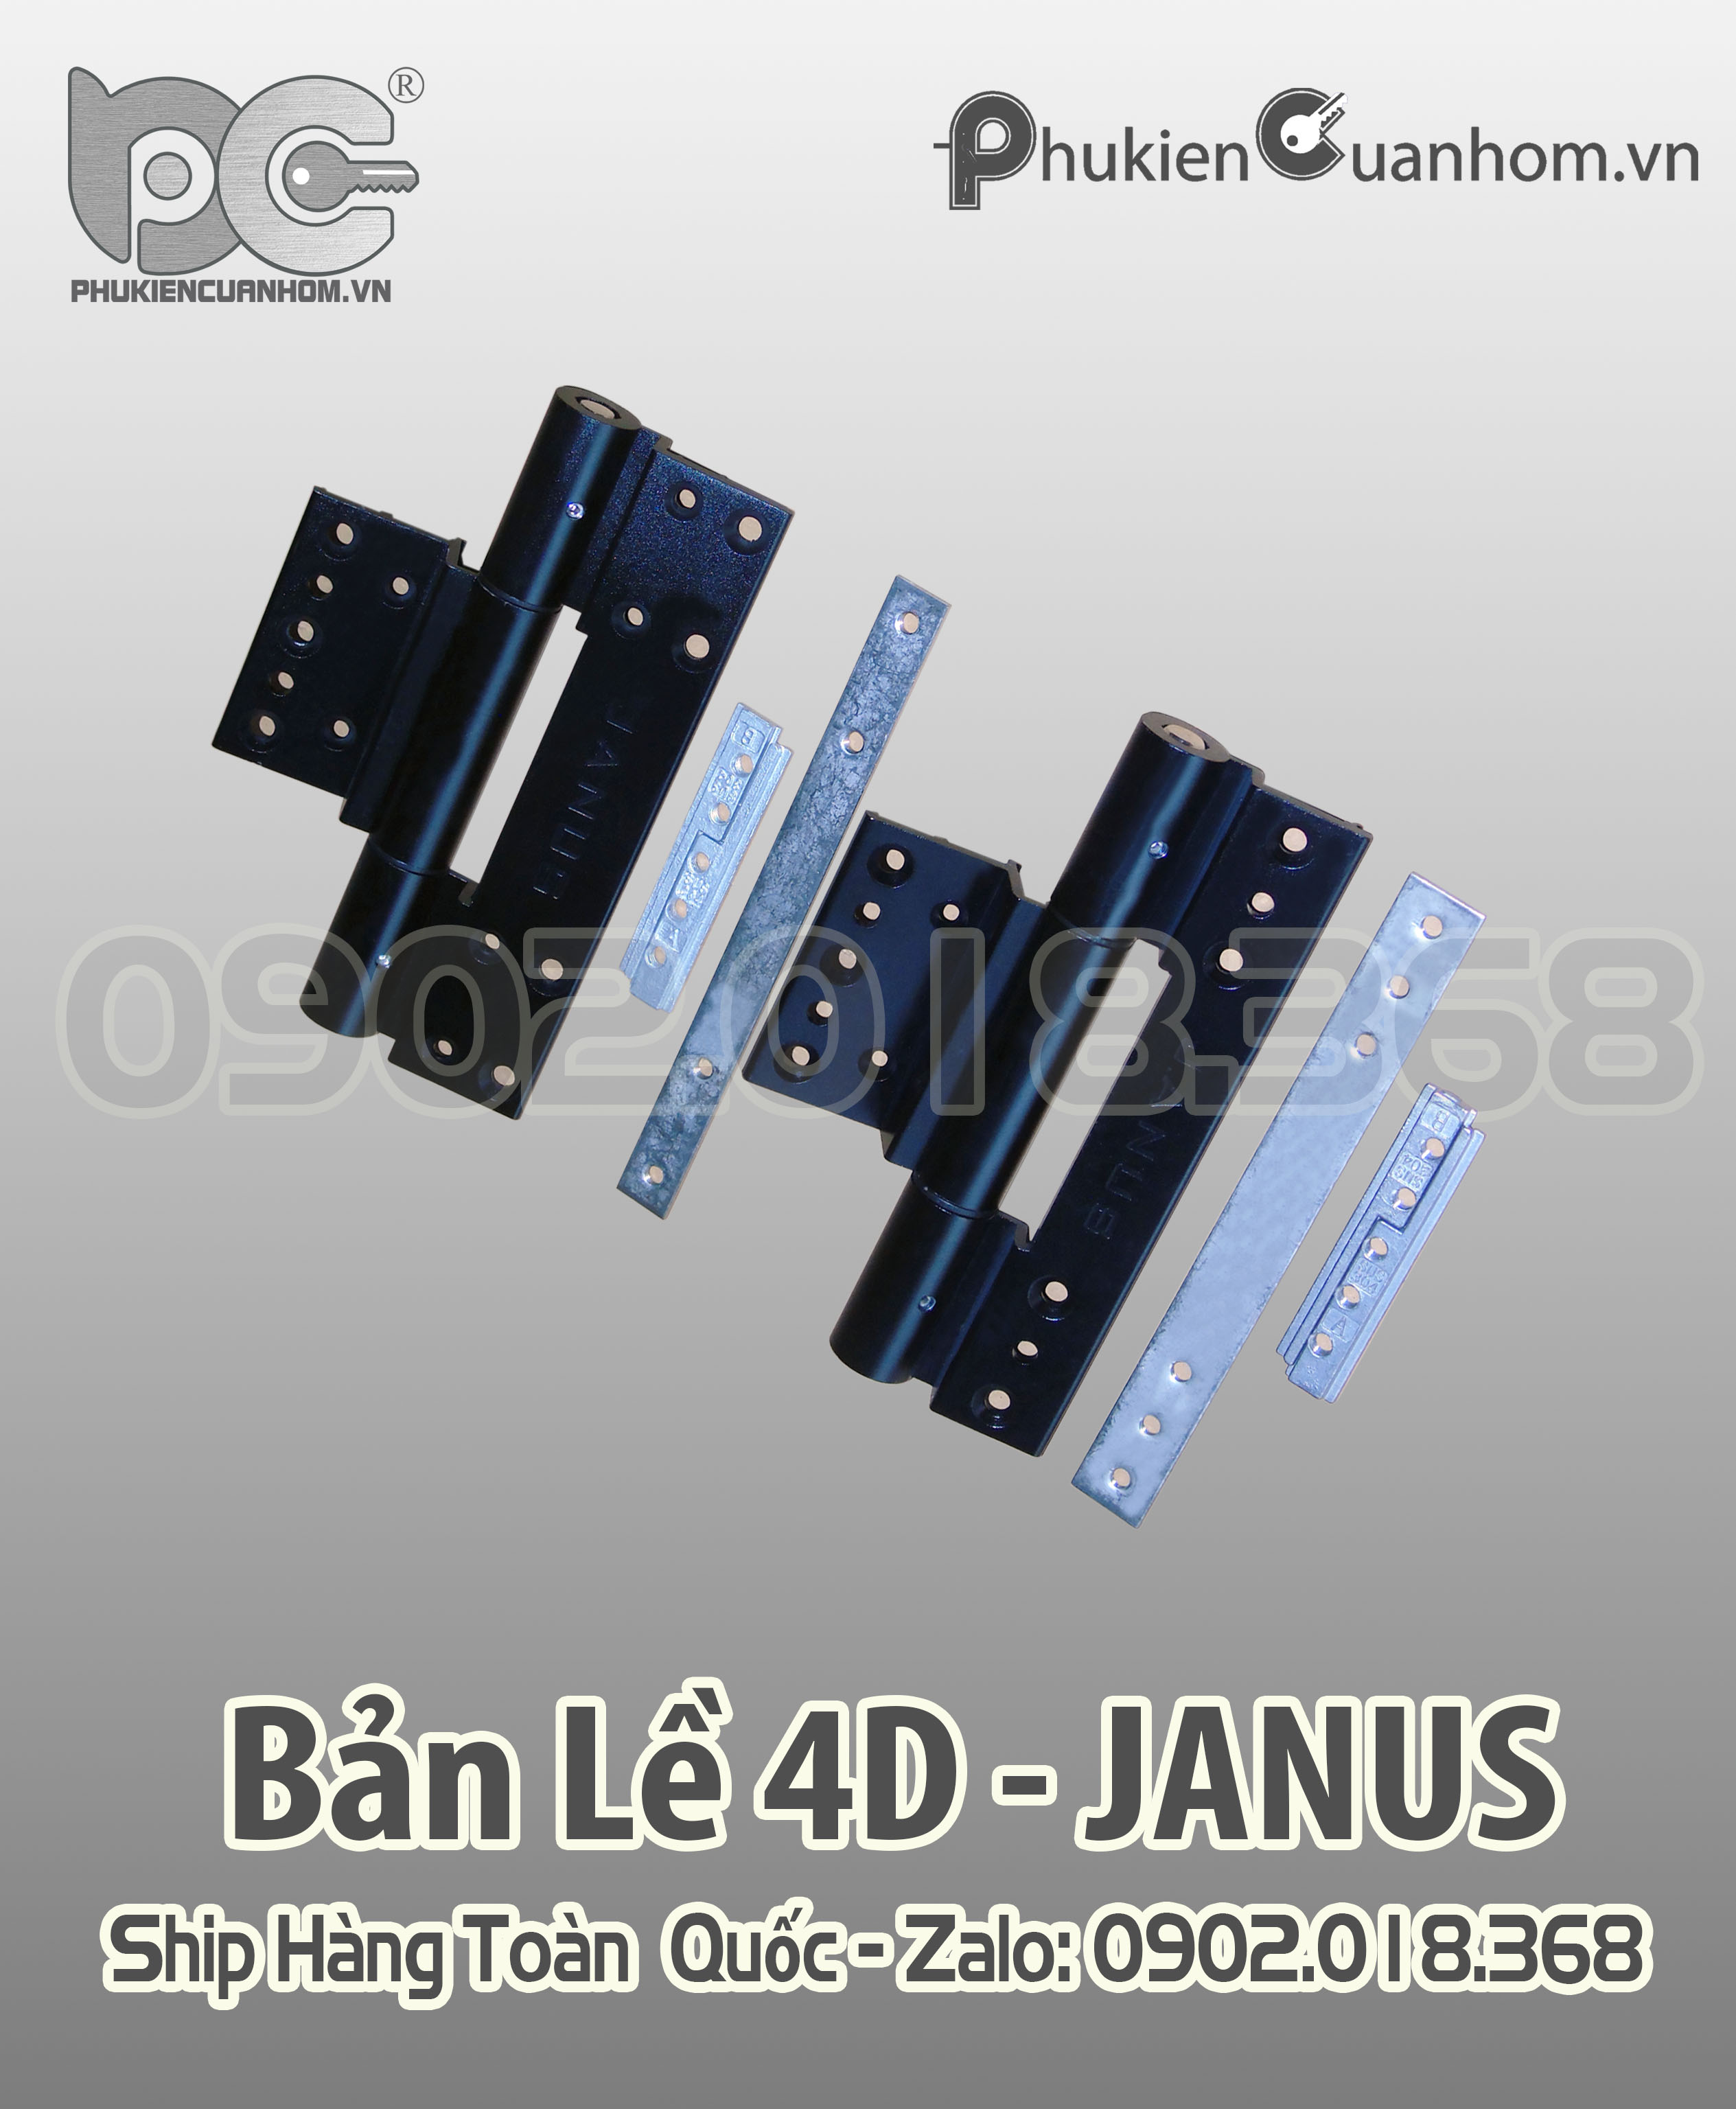 Bản lề 4D cao cấp nhôm Xingfa hệ 55 hiệu Janus